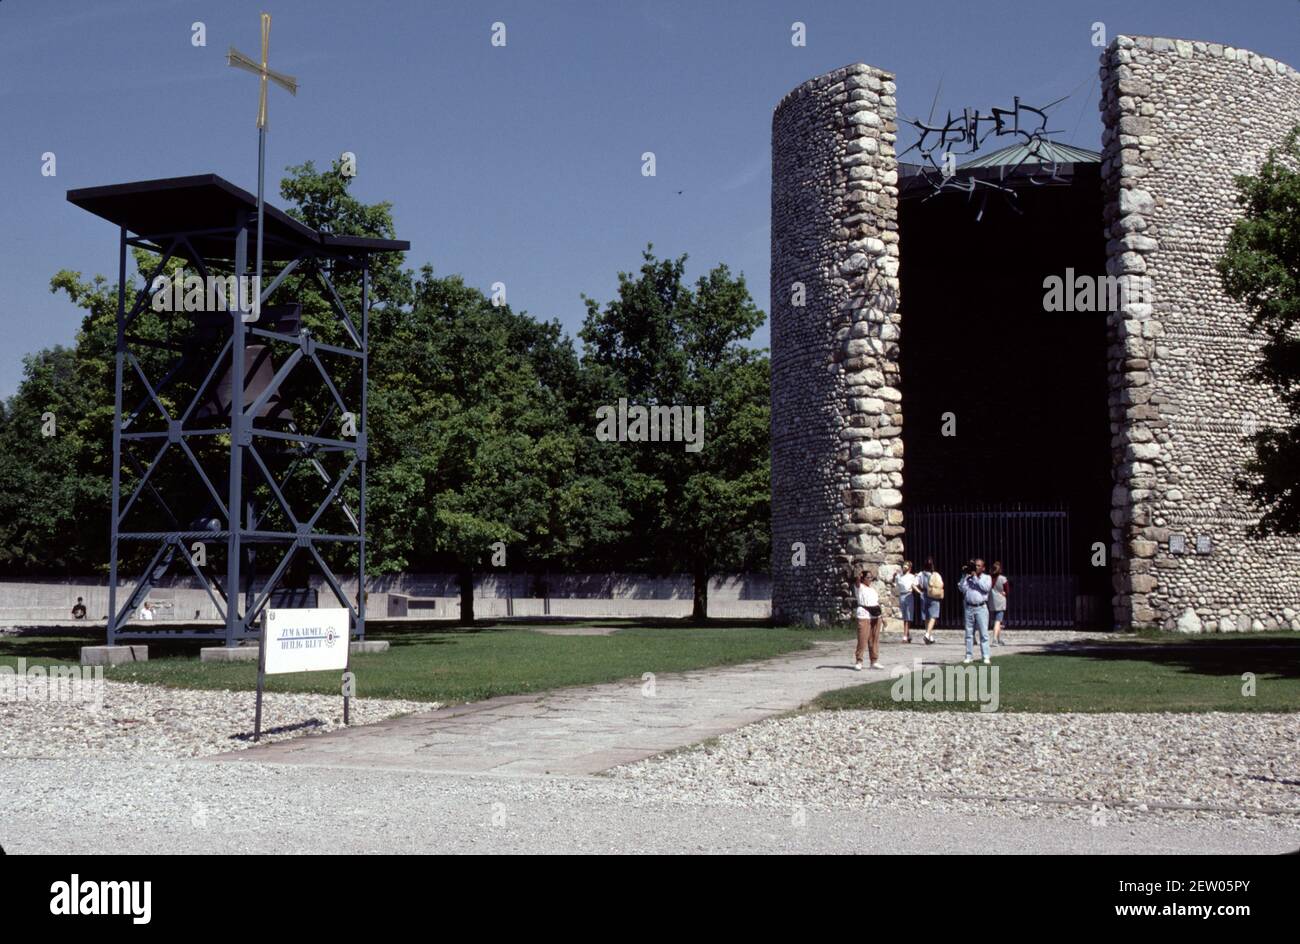 Dachau, Allemagne. 6/26/1990. Musée du camp de concentration de Dachau. Du 22 mars 1933 au 29 avril 1945. Premier camp construit par le Reich nazi. Photos d'époque des casernes, des bâtiments et de la disposition des camps. Banque D'Images